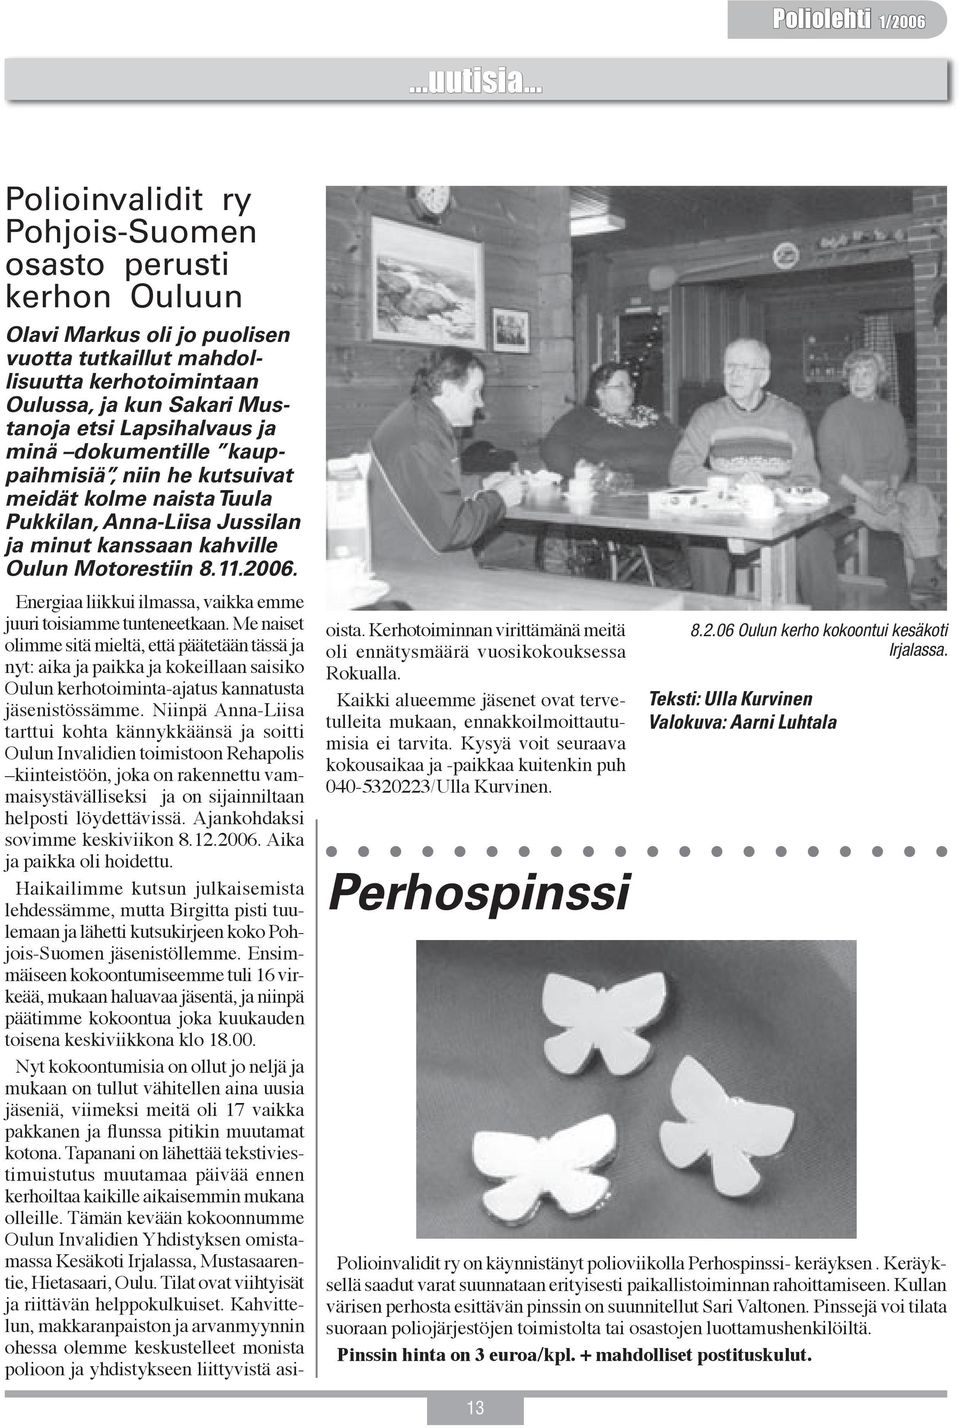 minä dokumentille kauppaihmisiä, niin he kutsuivat meidät kolme naista Tuula Pukkilan, Anna-Liisa Jussilan ja minut kanssaan kahville Oulun Motorestiin 8.11.2006.